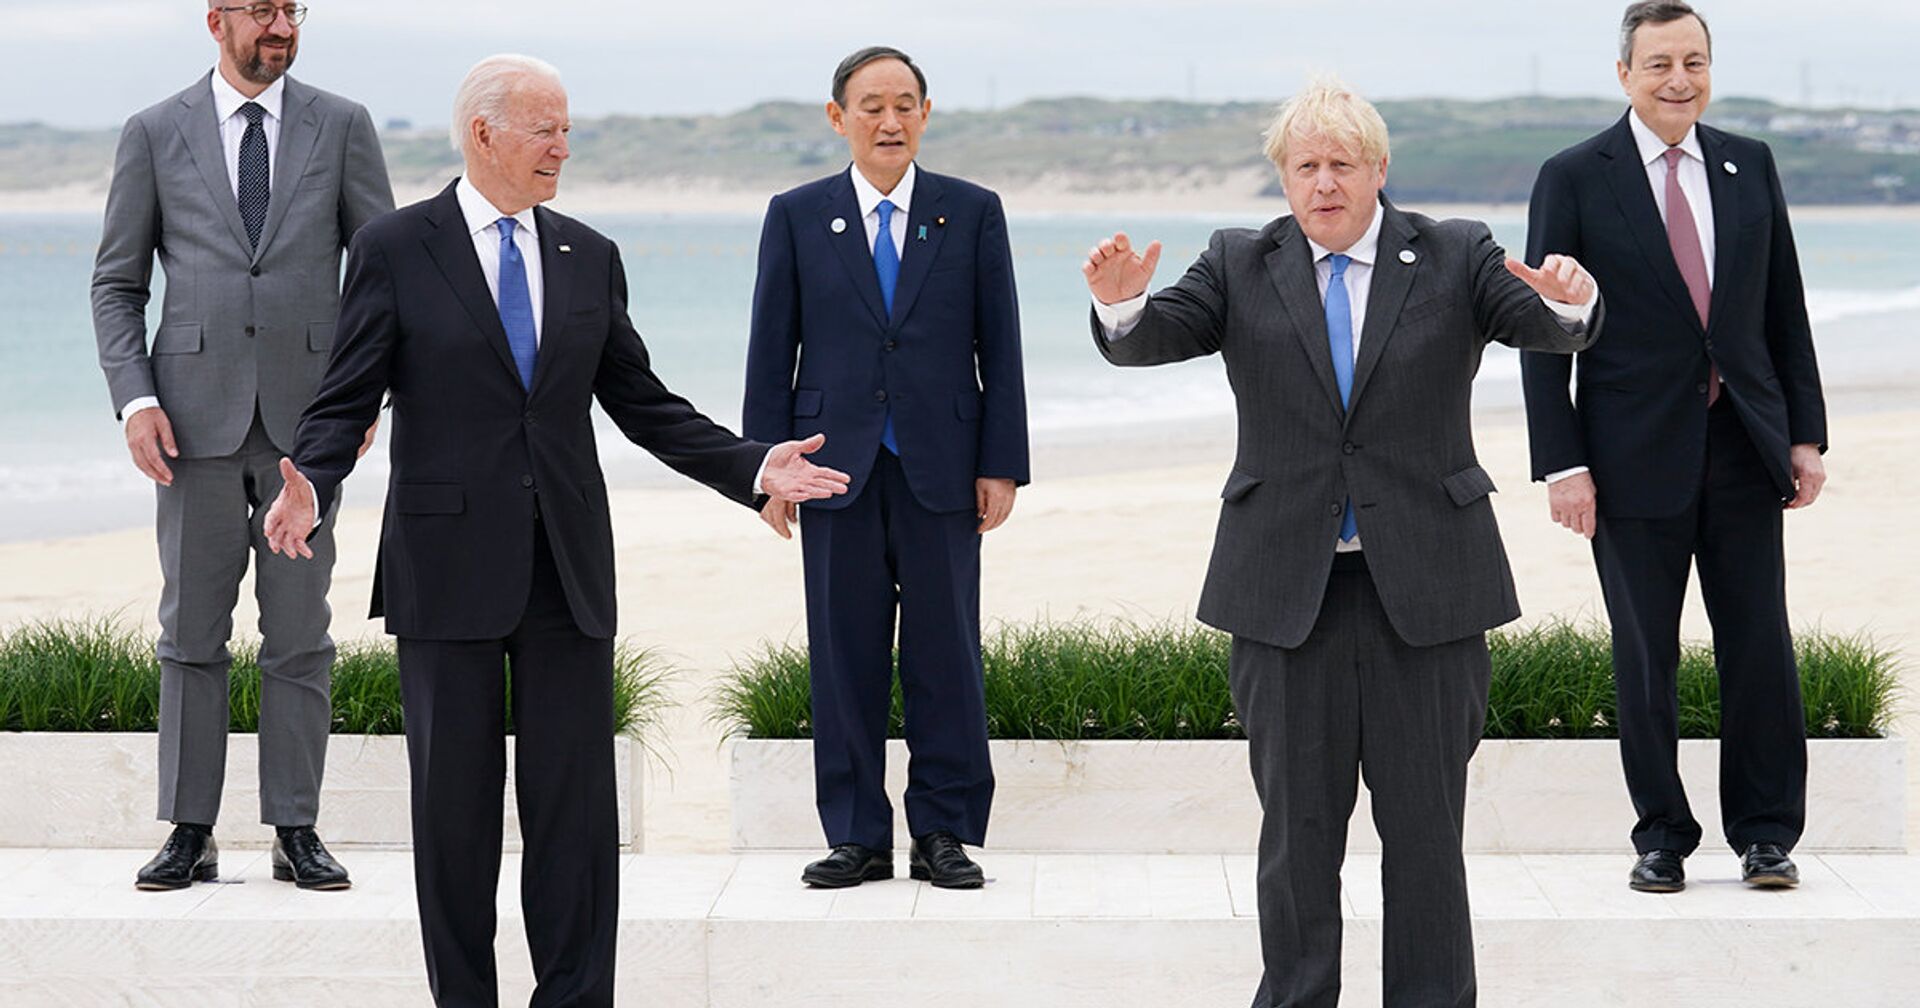 Лидеры стран G7 позируют для фотографии во время саммита - ИноСМИ, 1920, 17.06.2021